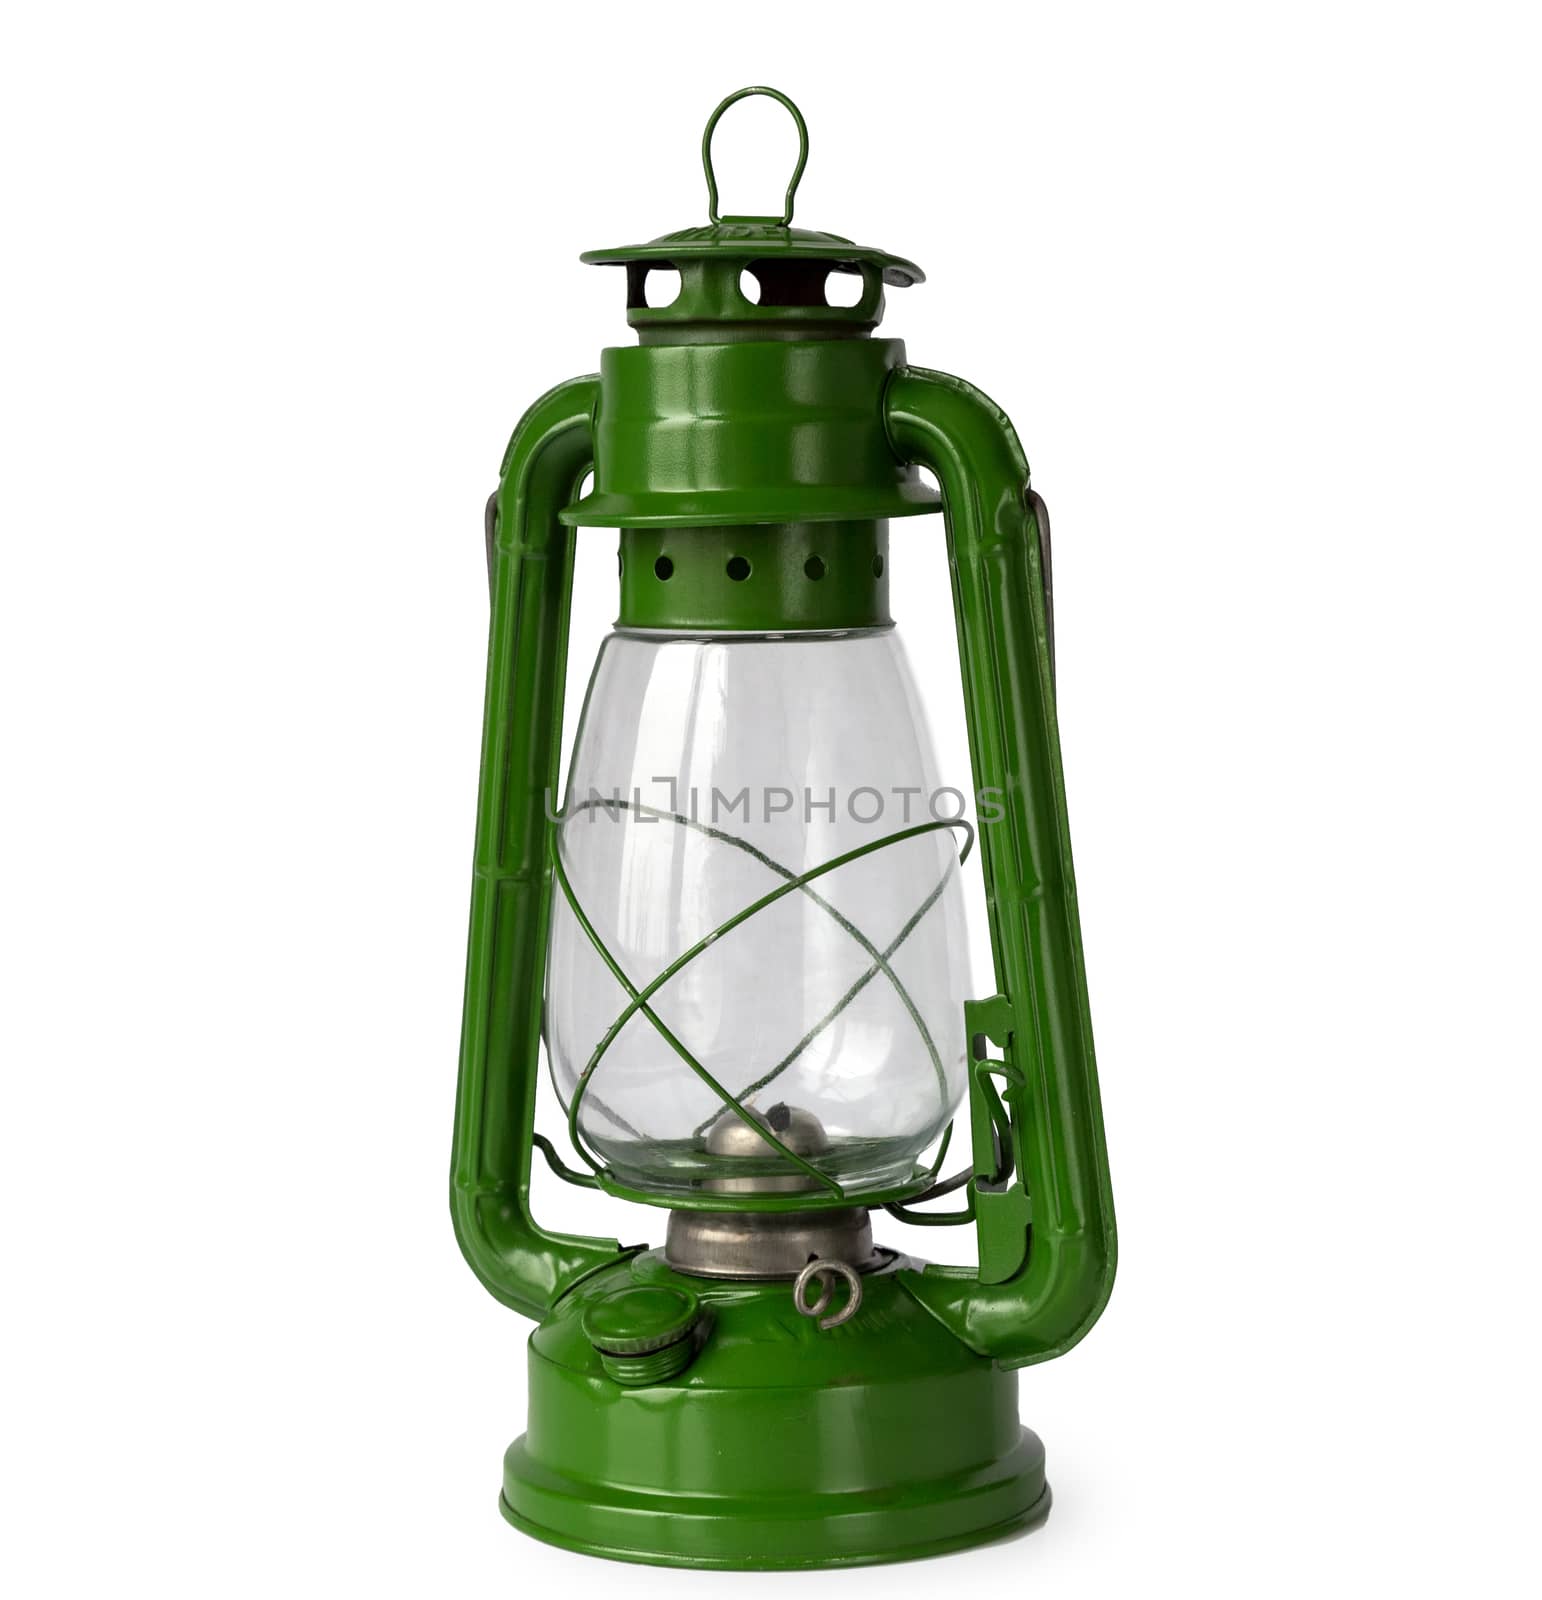 Green vintage kerosene lantern, isolated on white background